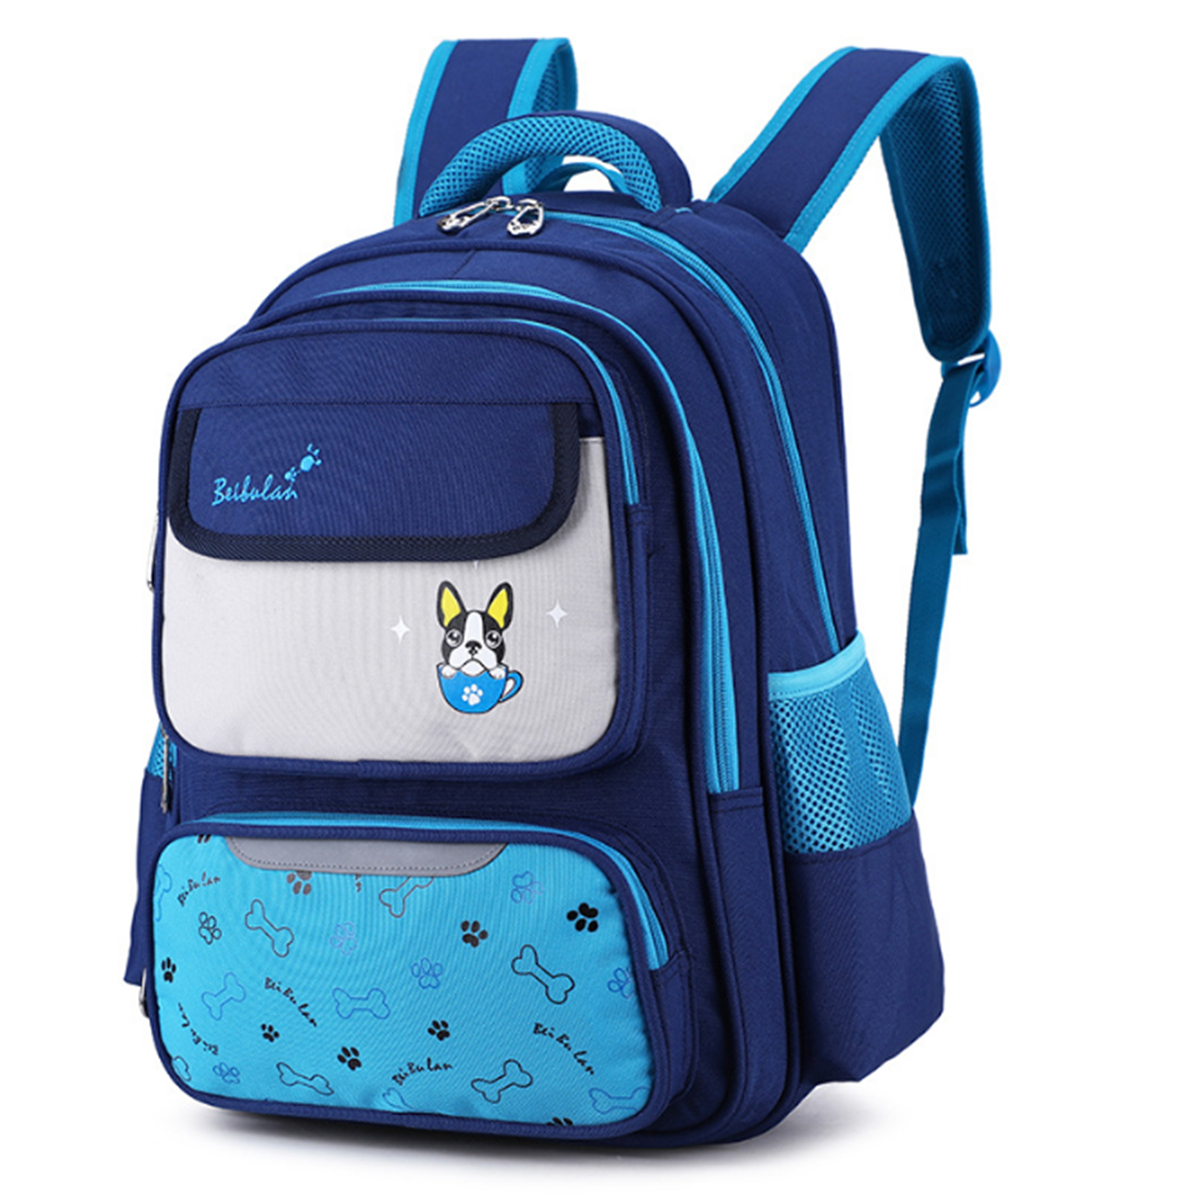 

18L Children Kids Backpack Rucksack Waterproof Student School Shoulder Bag Outdoor Travel